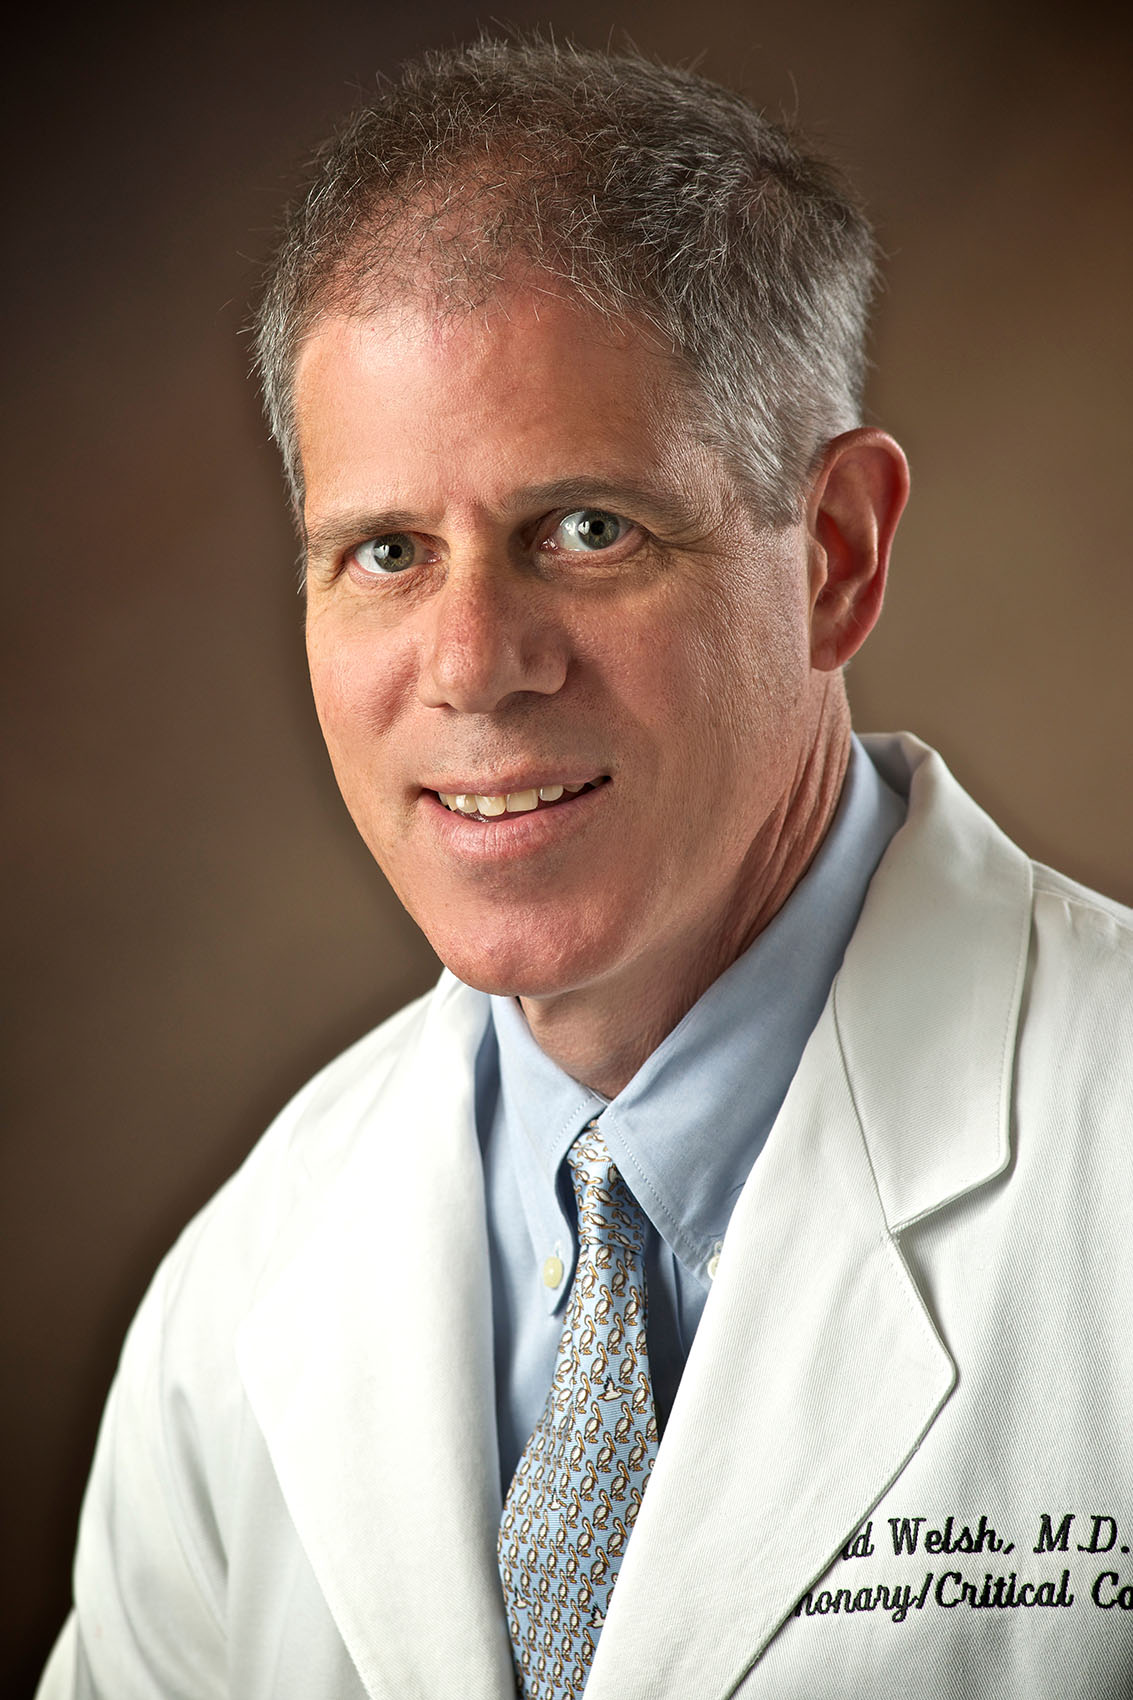 Dr. David Welsh - LSU Department of Medicine